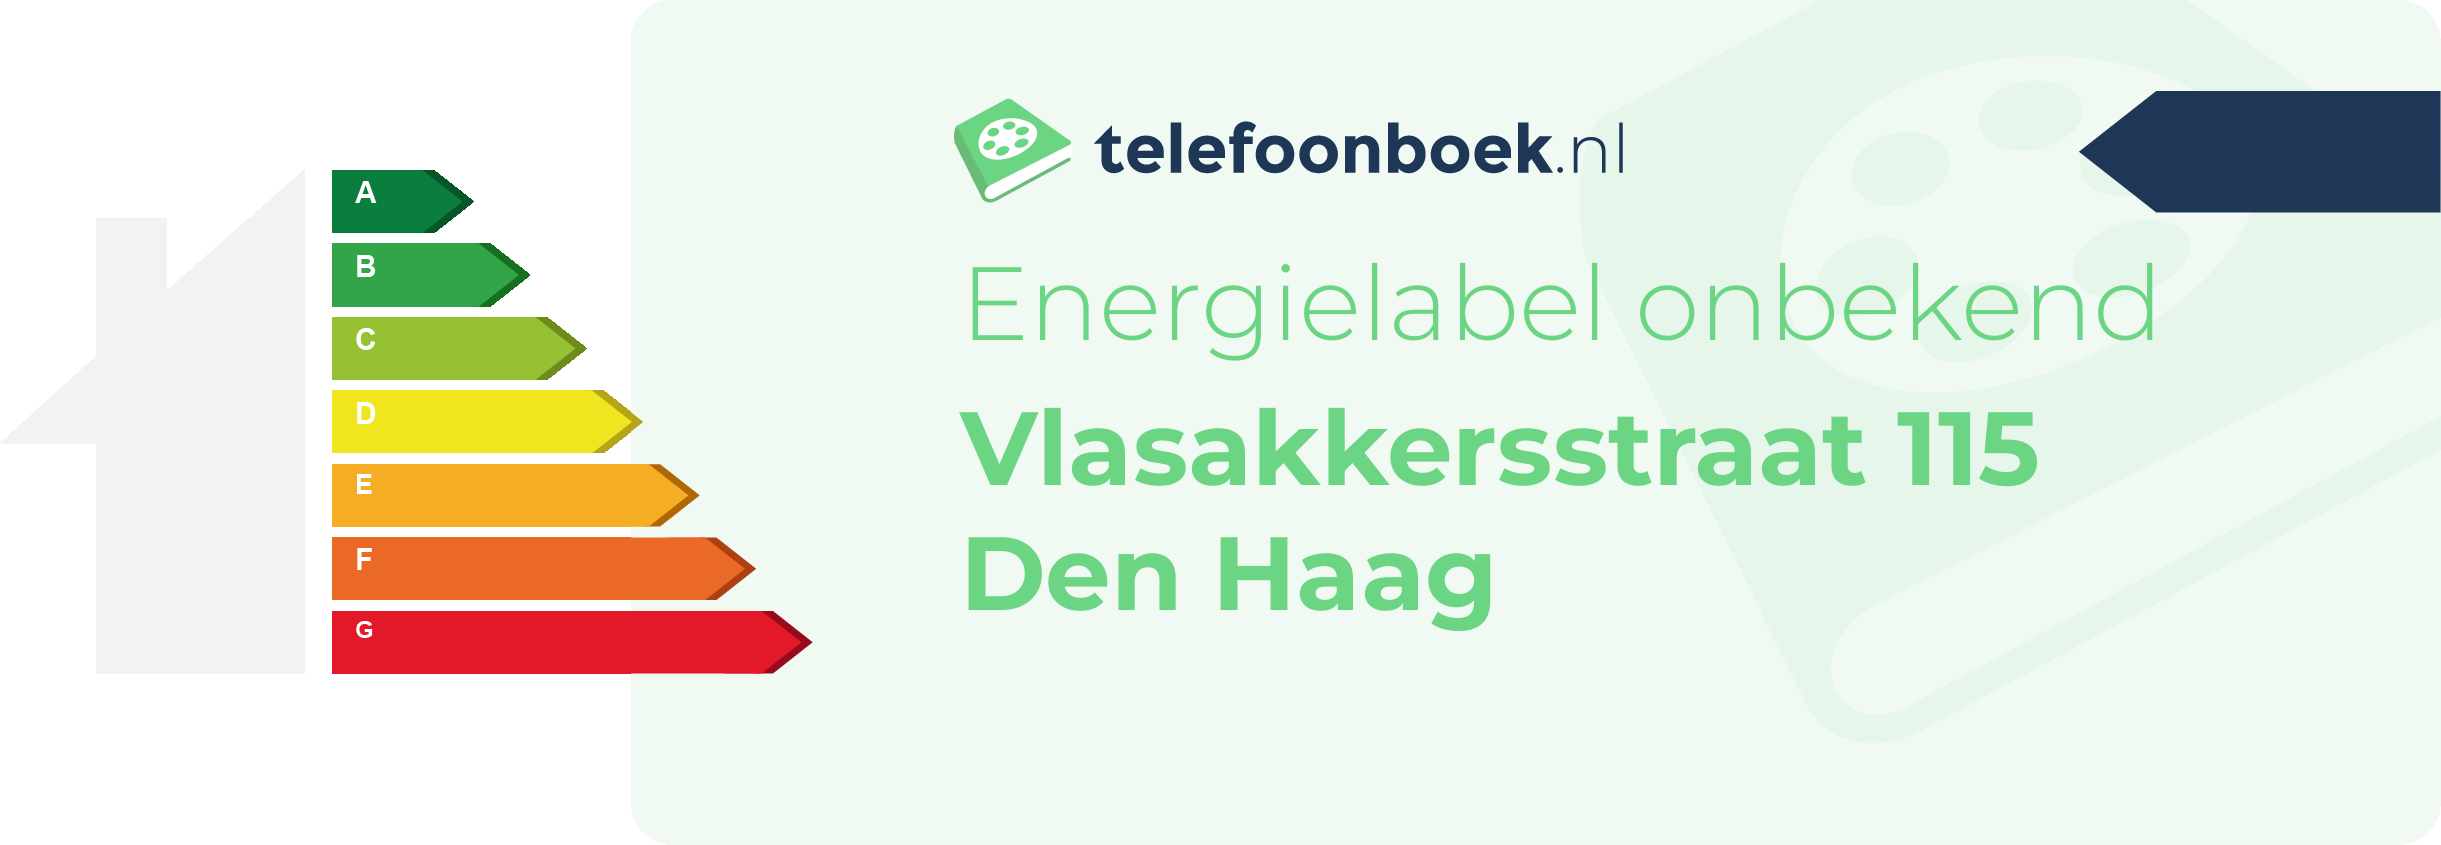 Energielabel Vlasakkersstraat 115 Den Haag